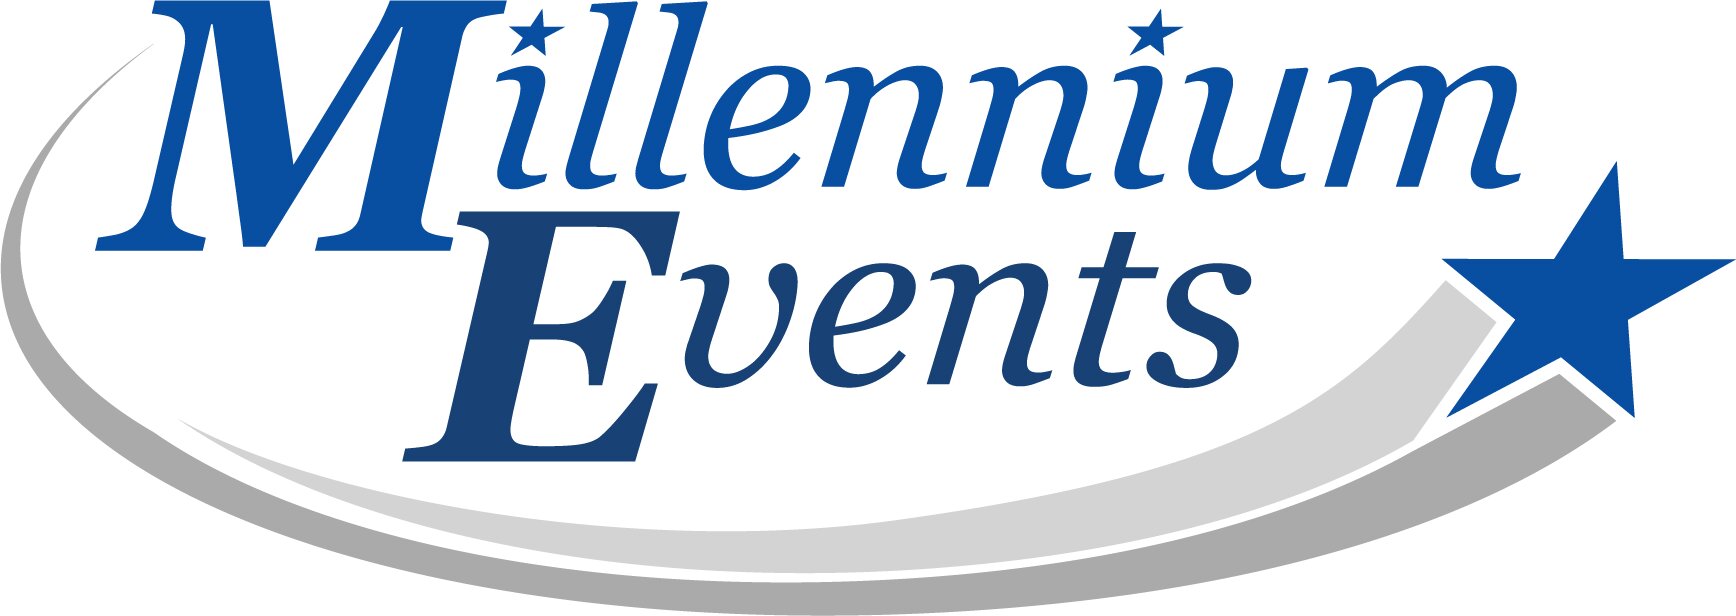 Millennium_Events_logo